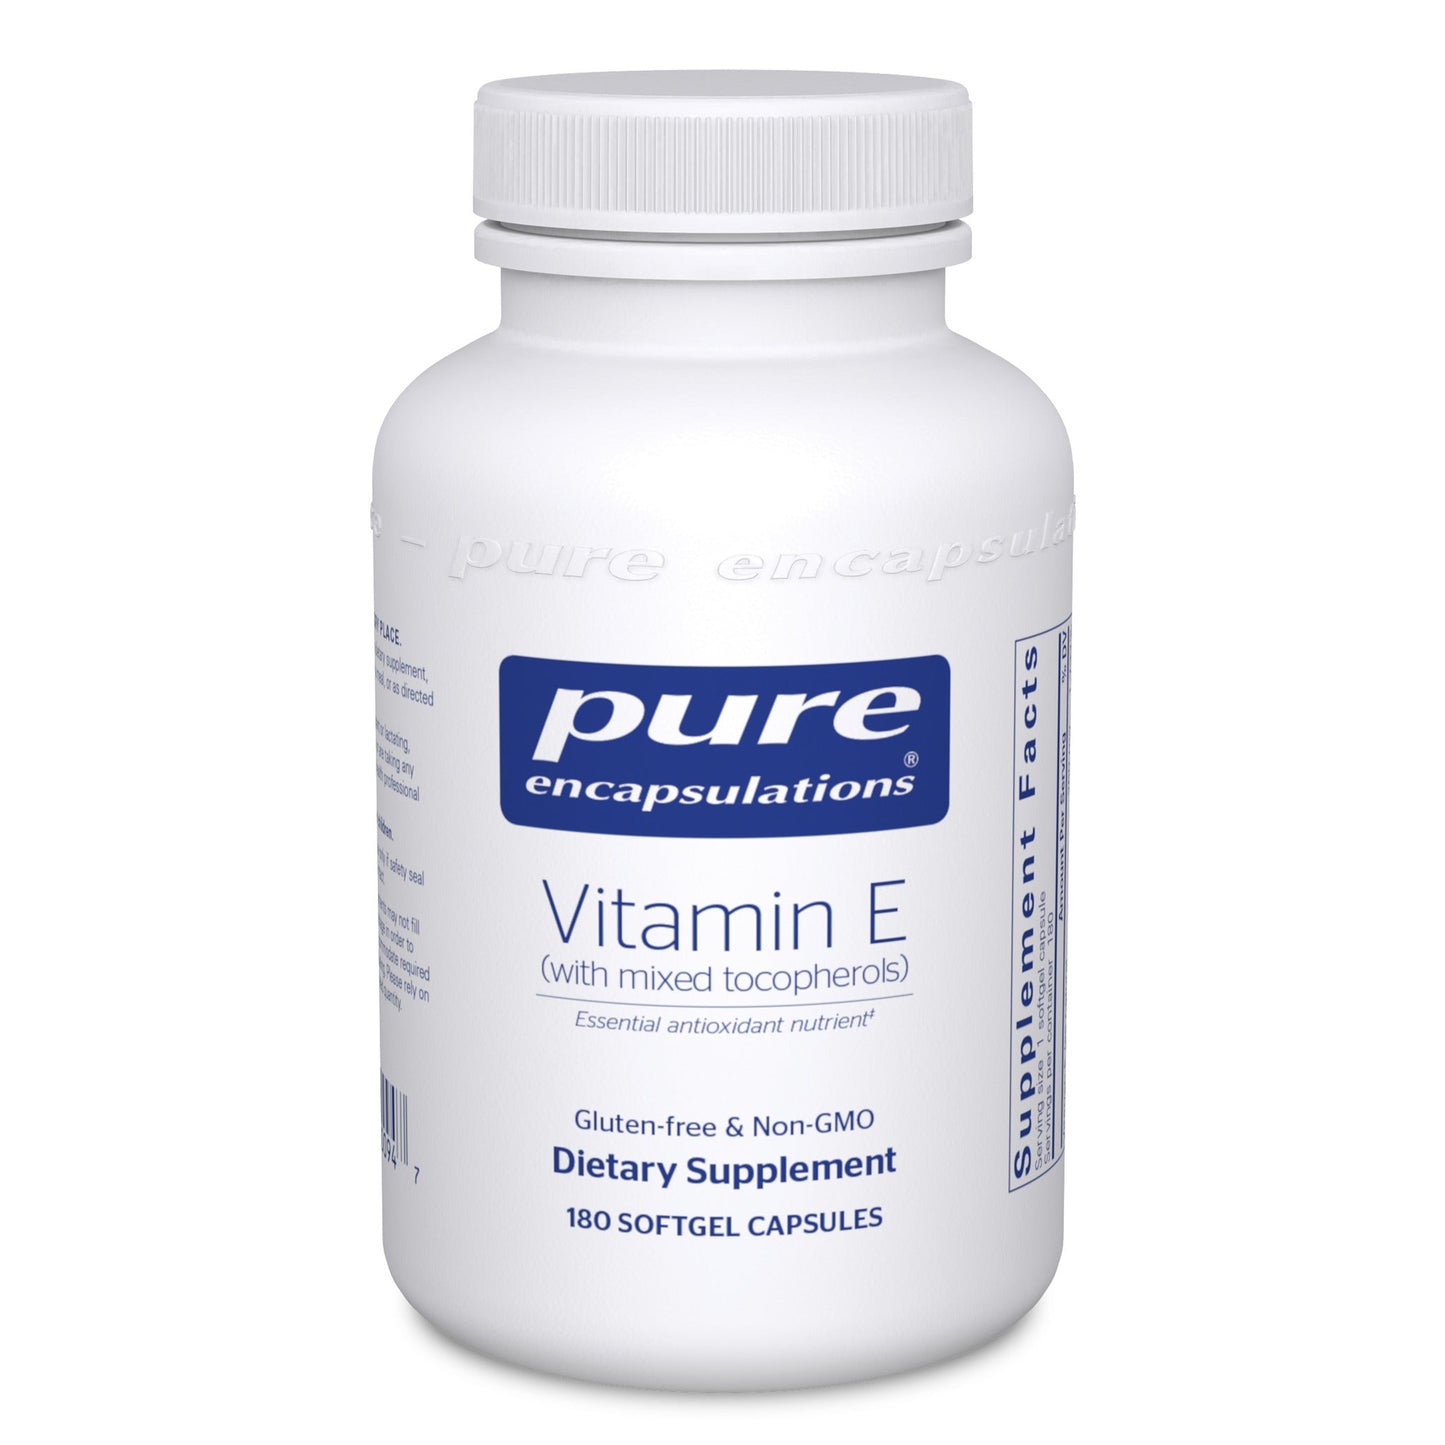 Vitamin E (with mixed tocopherols)